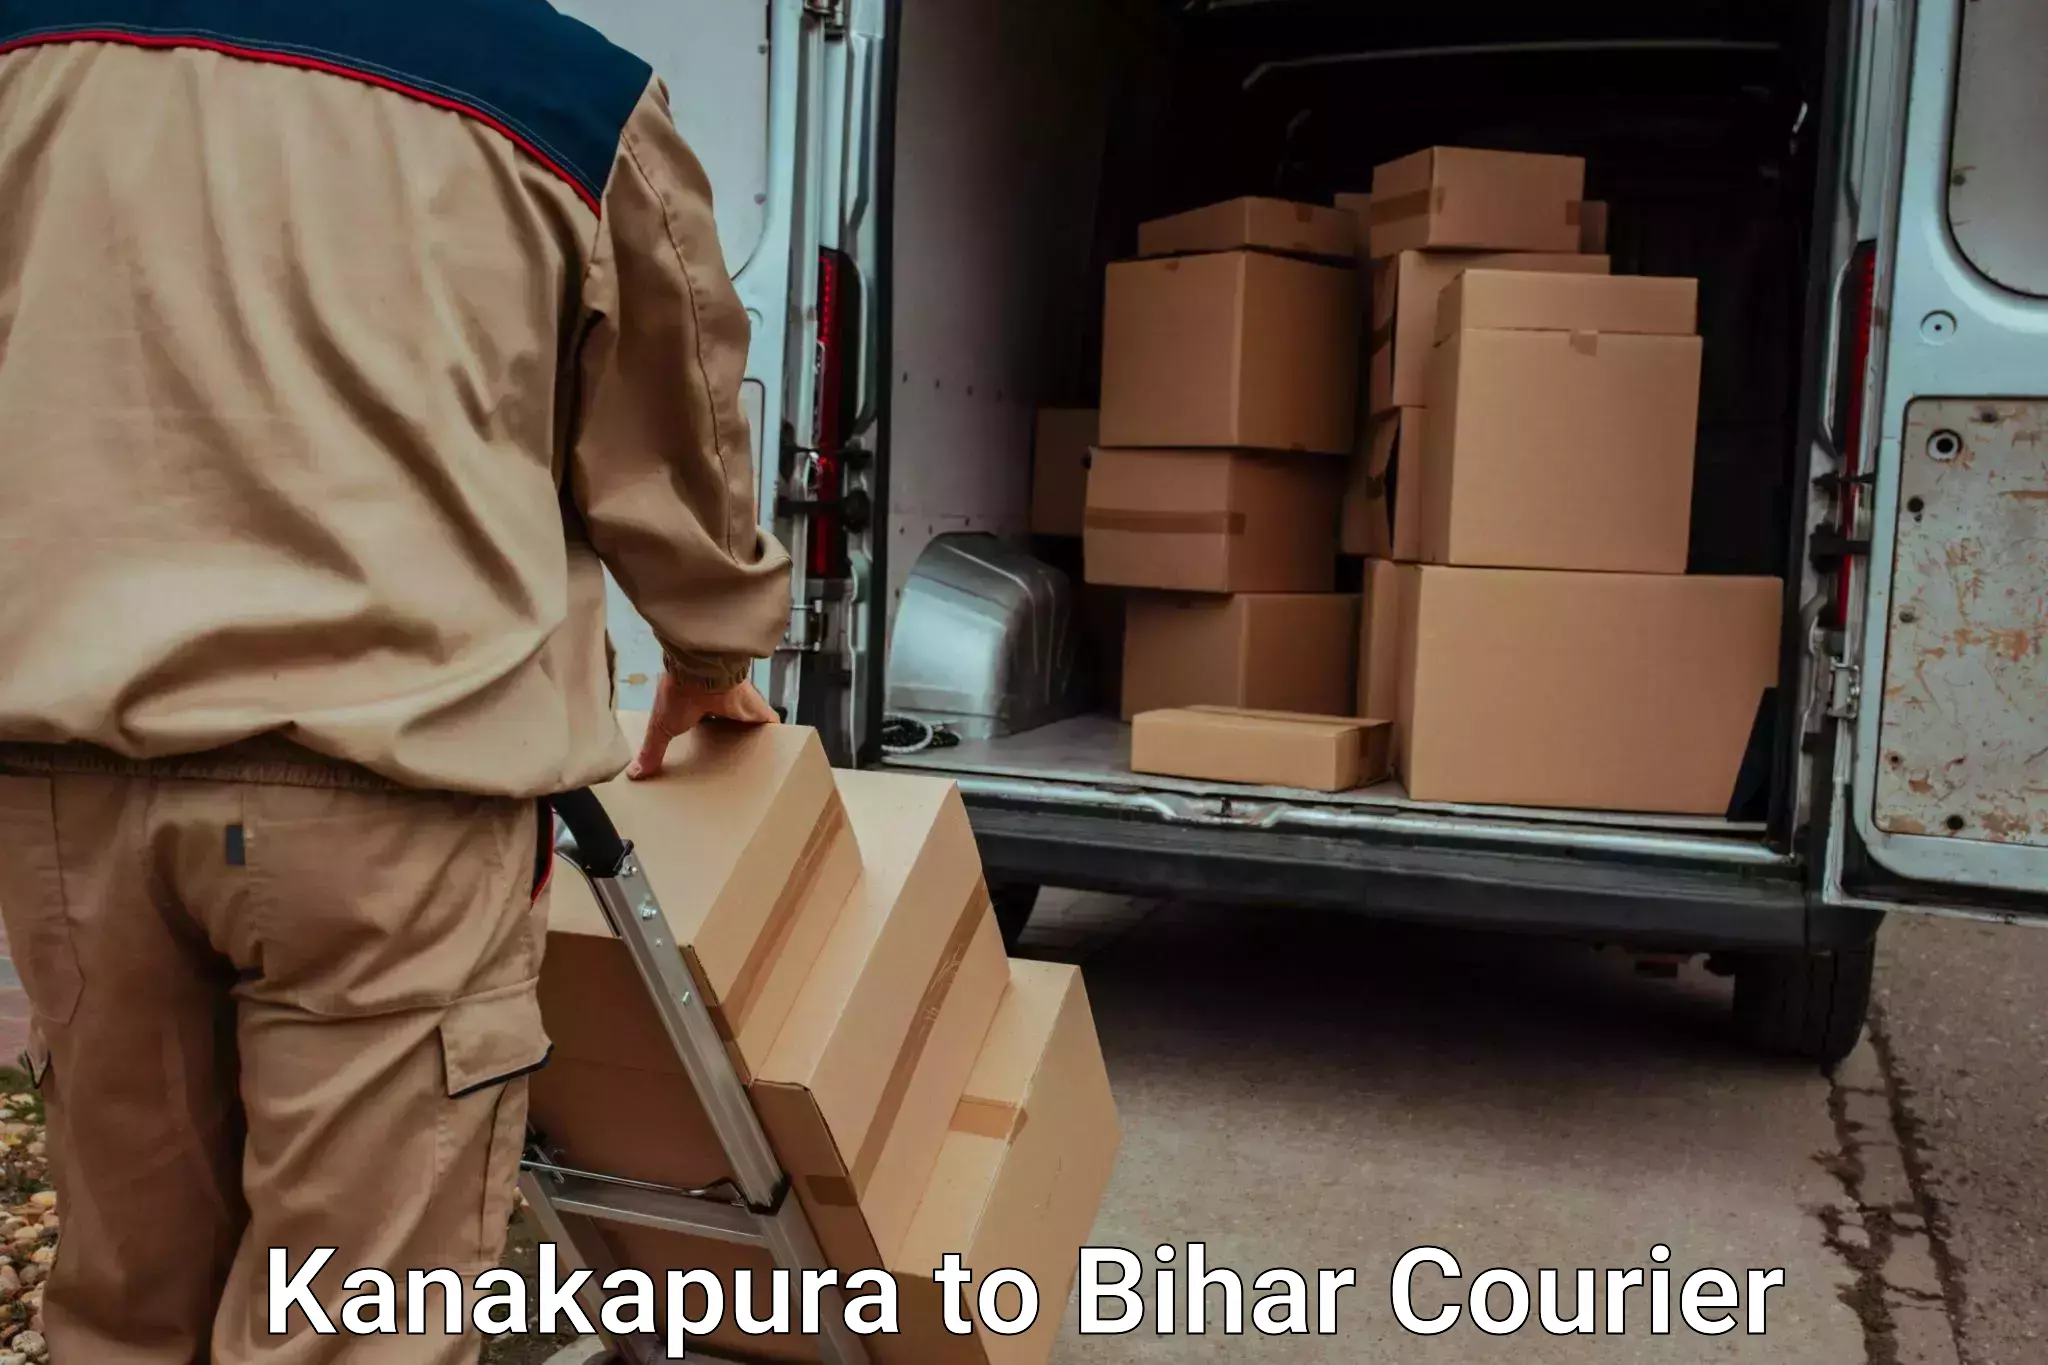 Home shifting services Kanakapura to Bihar